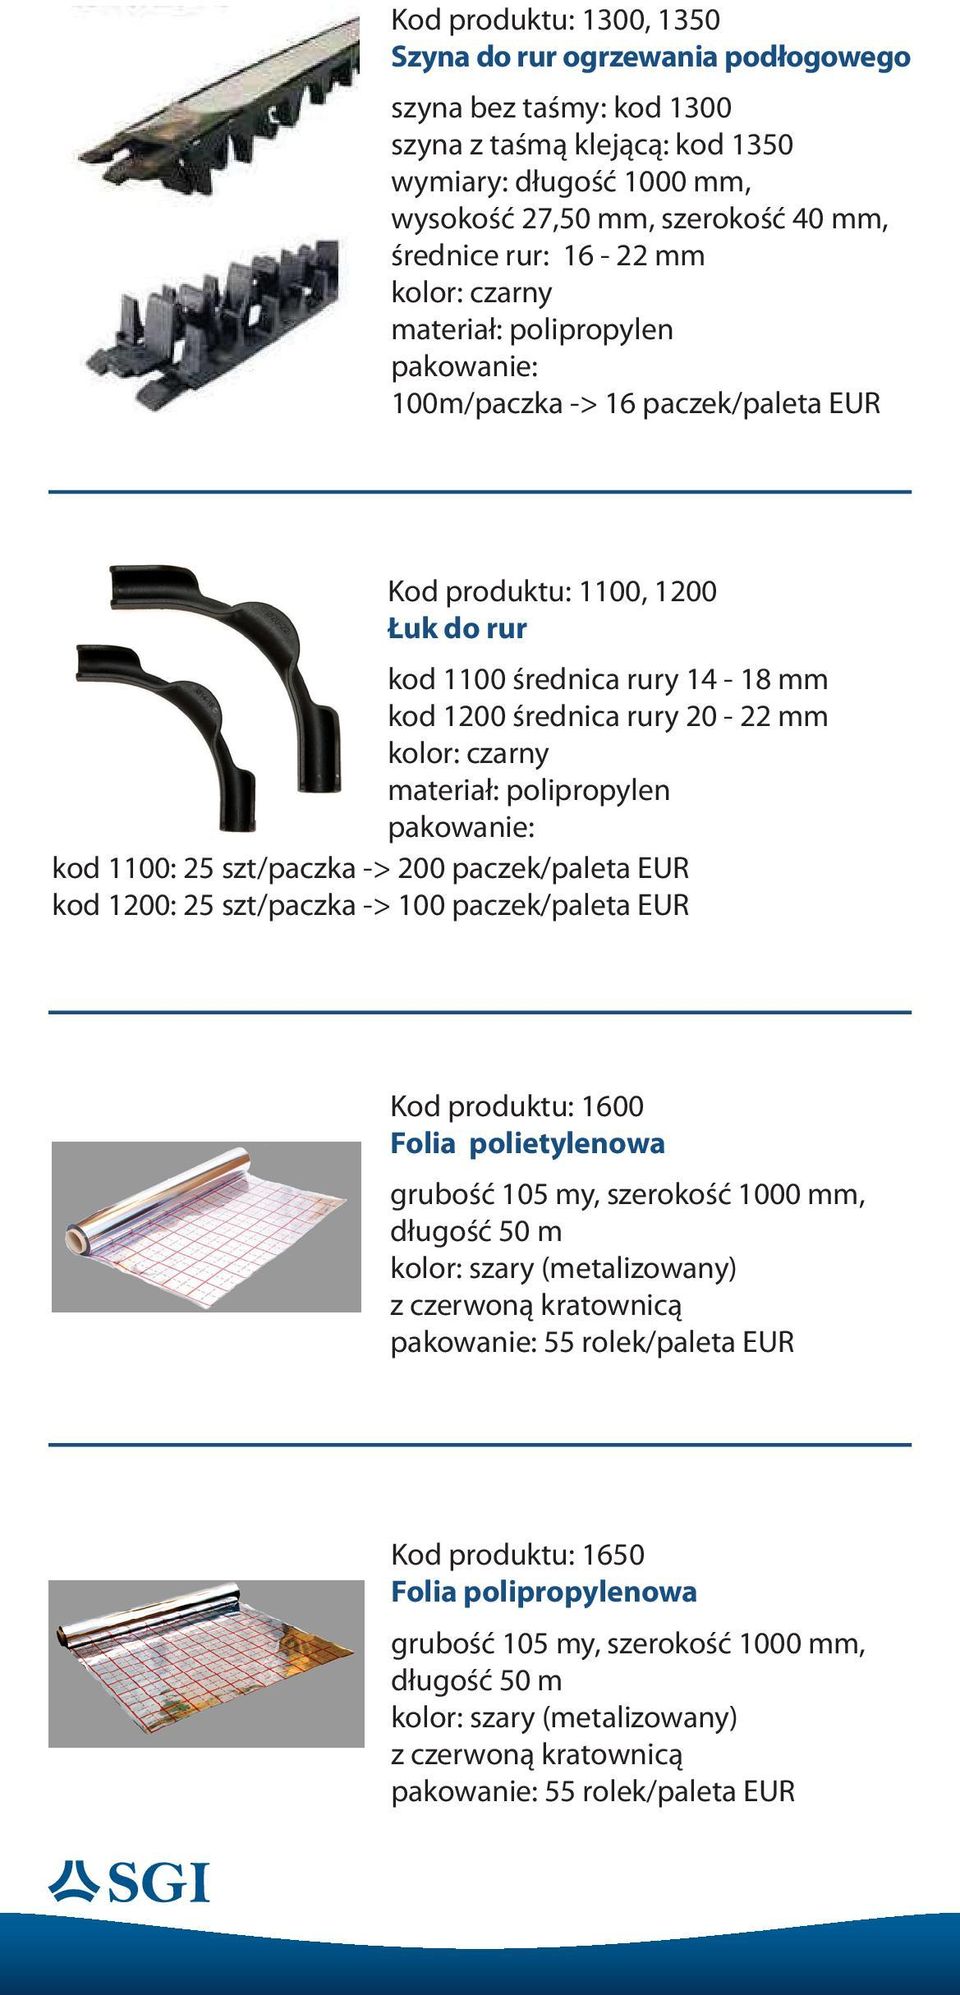 200 paczek/paleta EUR kod 1200: 25 szt/paczka -> 100 paczek/paleta EUR Kod produktu: 1600 Folia polietylenowa grubość 105 my, szerokość 1000 mm, długość 50 m kolor: szary (metalizowany) z